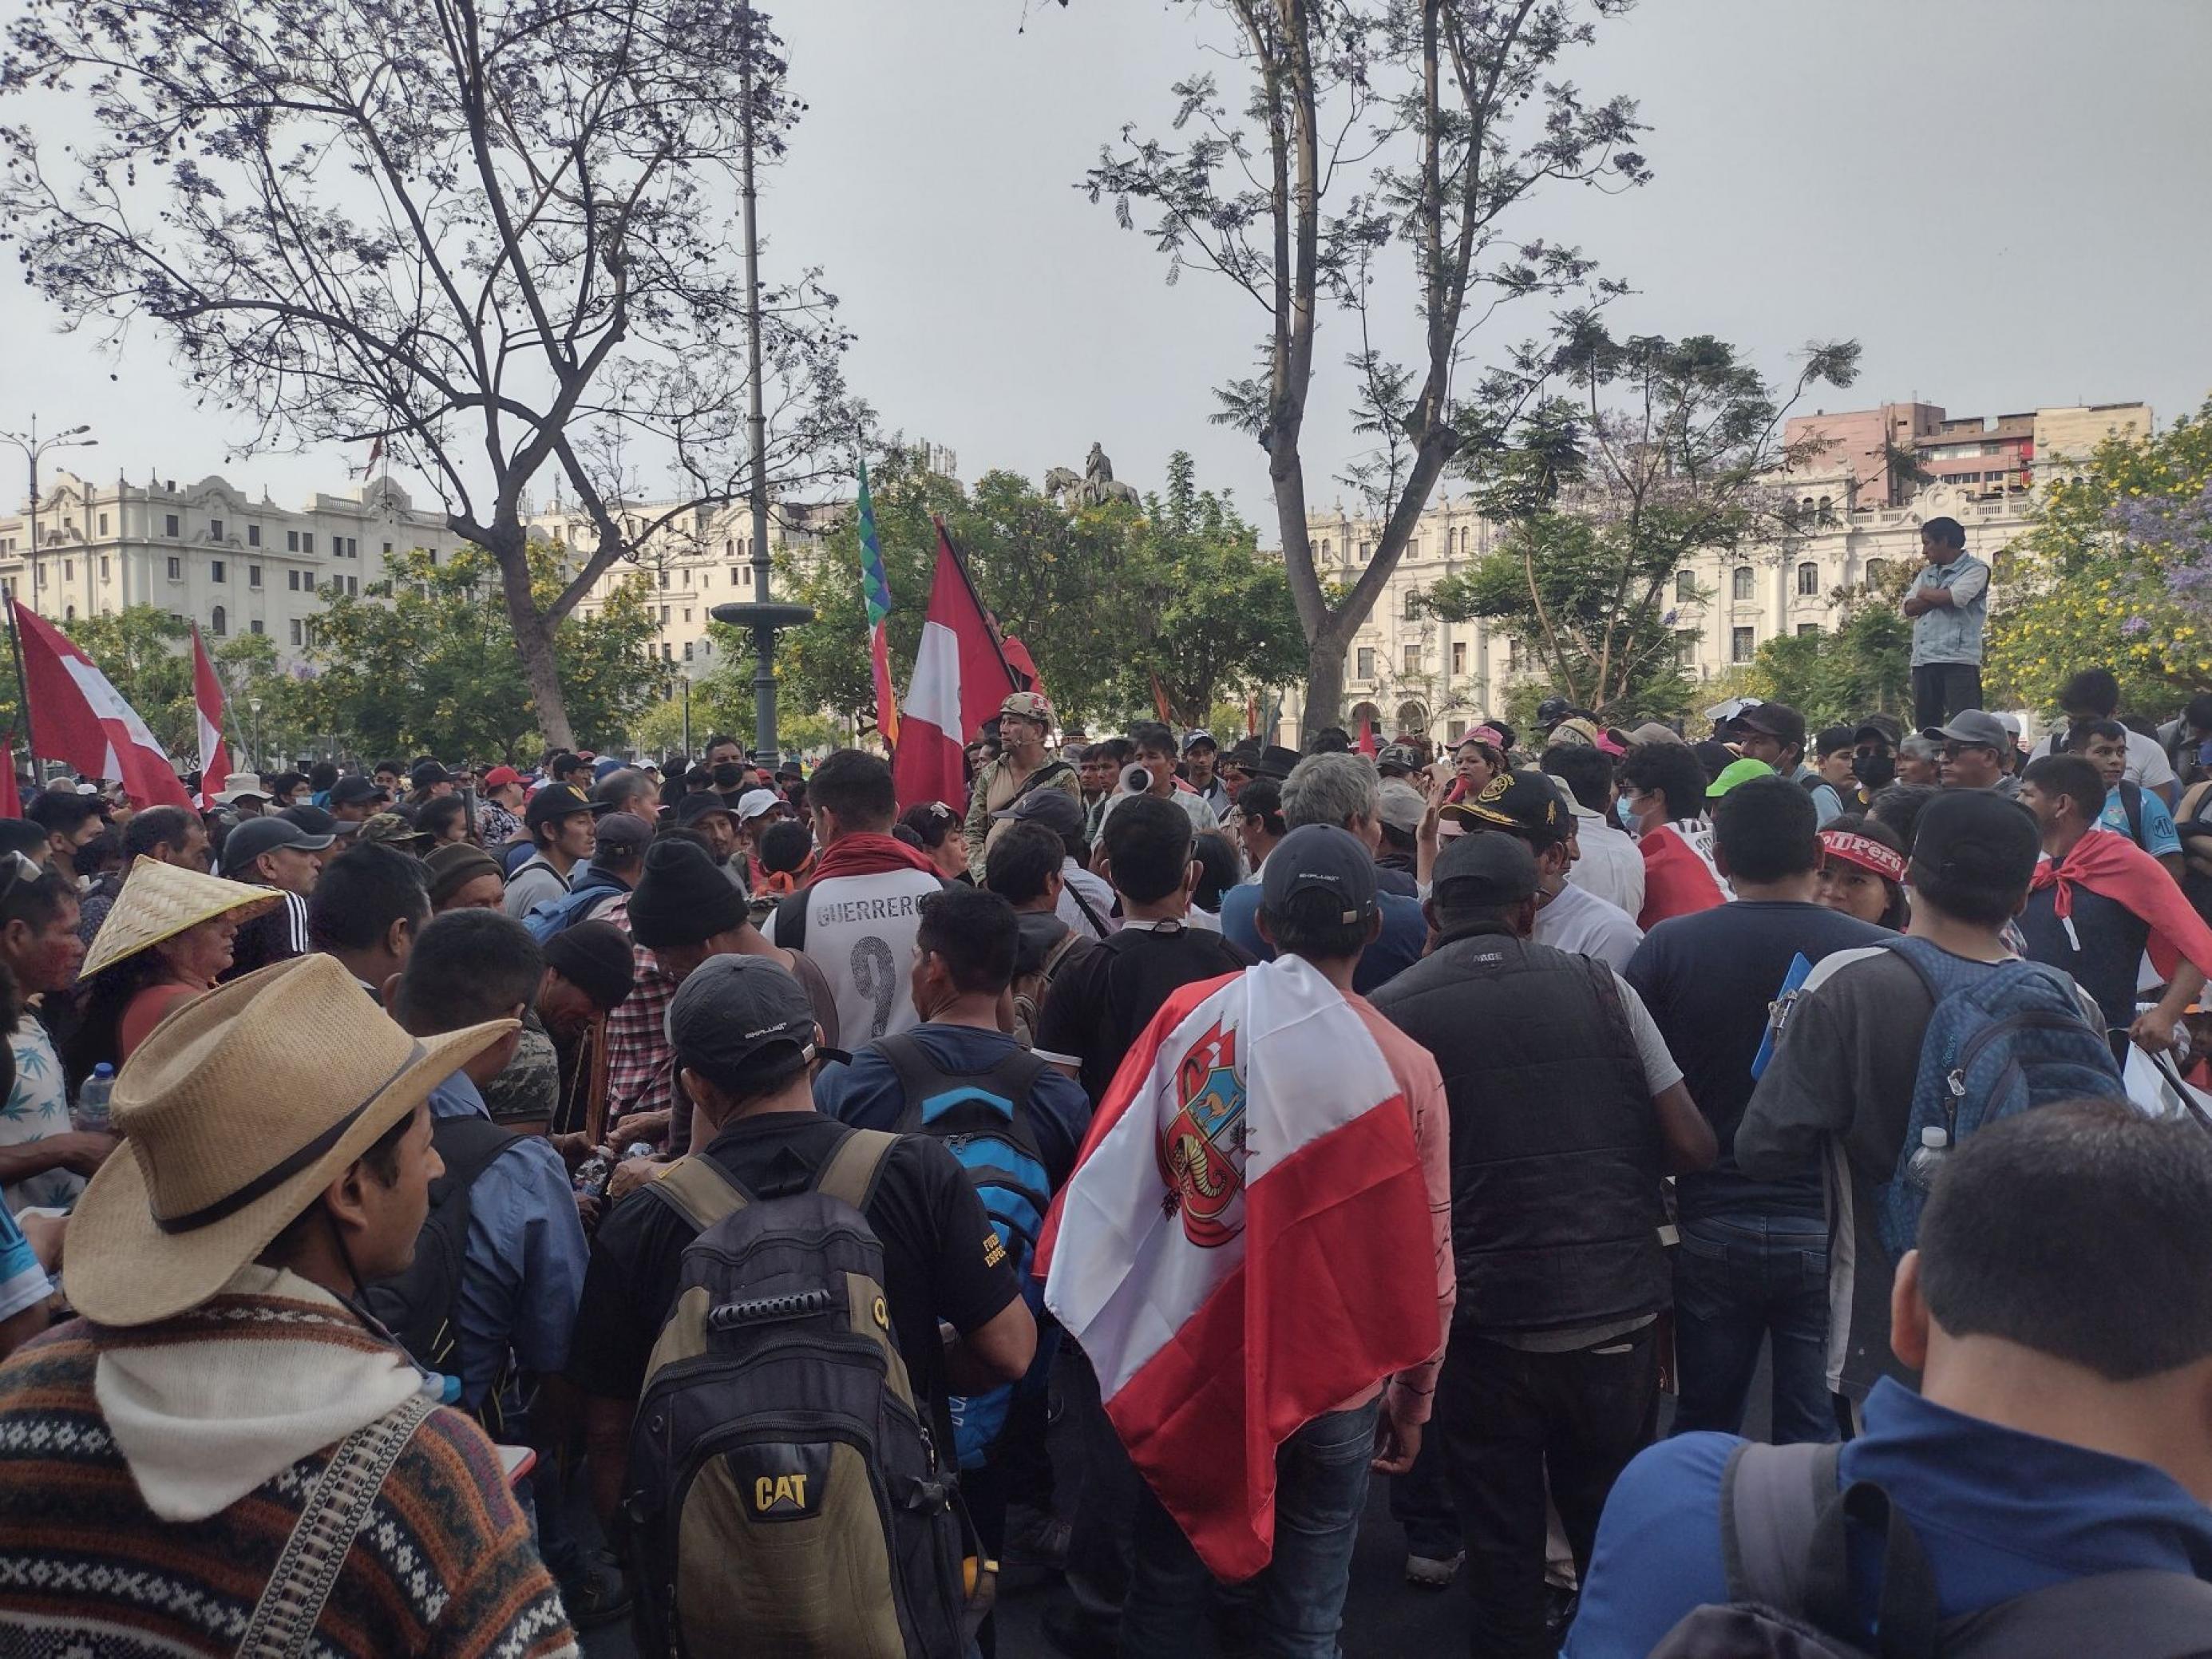 Menschenansammlung vor einem öffentlichen Platz. Einige tragen die peruanische Flagge auf dem Rücken. Sie lauschen einem Mann, der auf einer Bank steht.